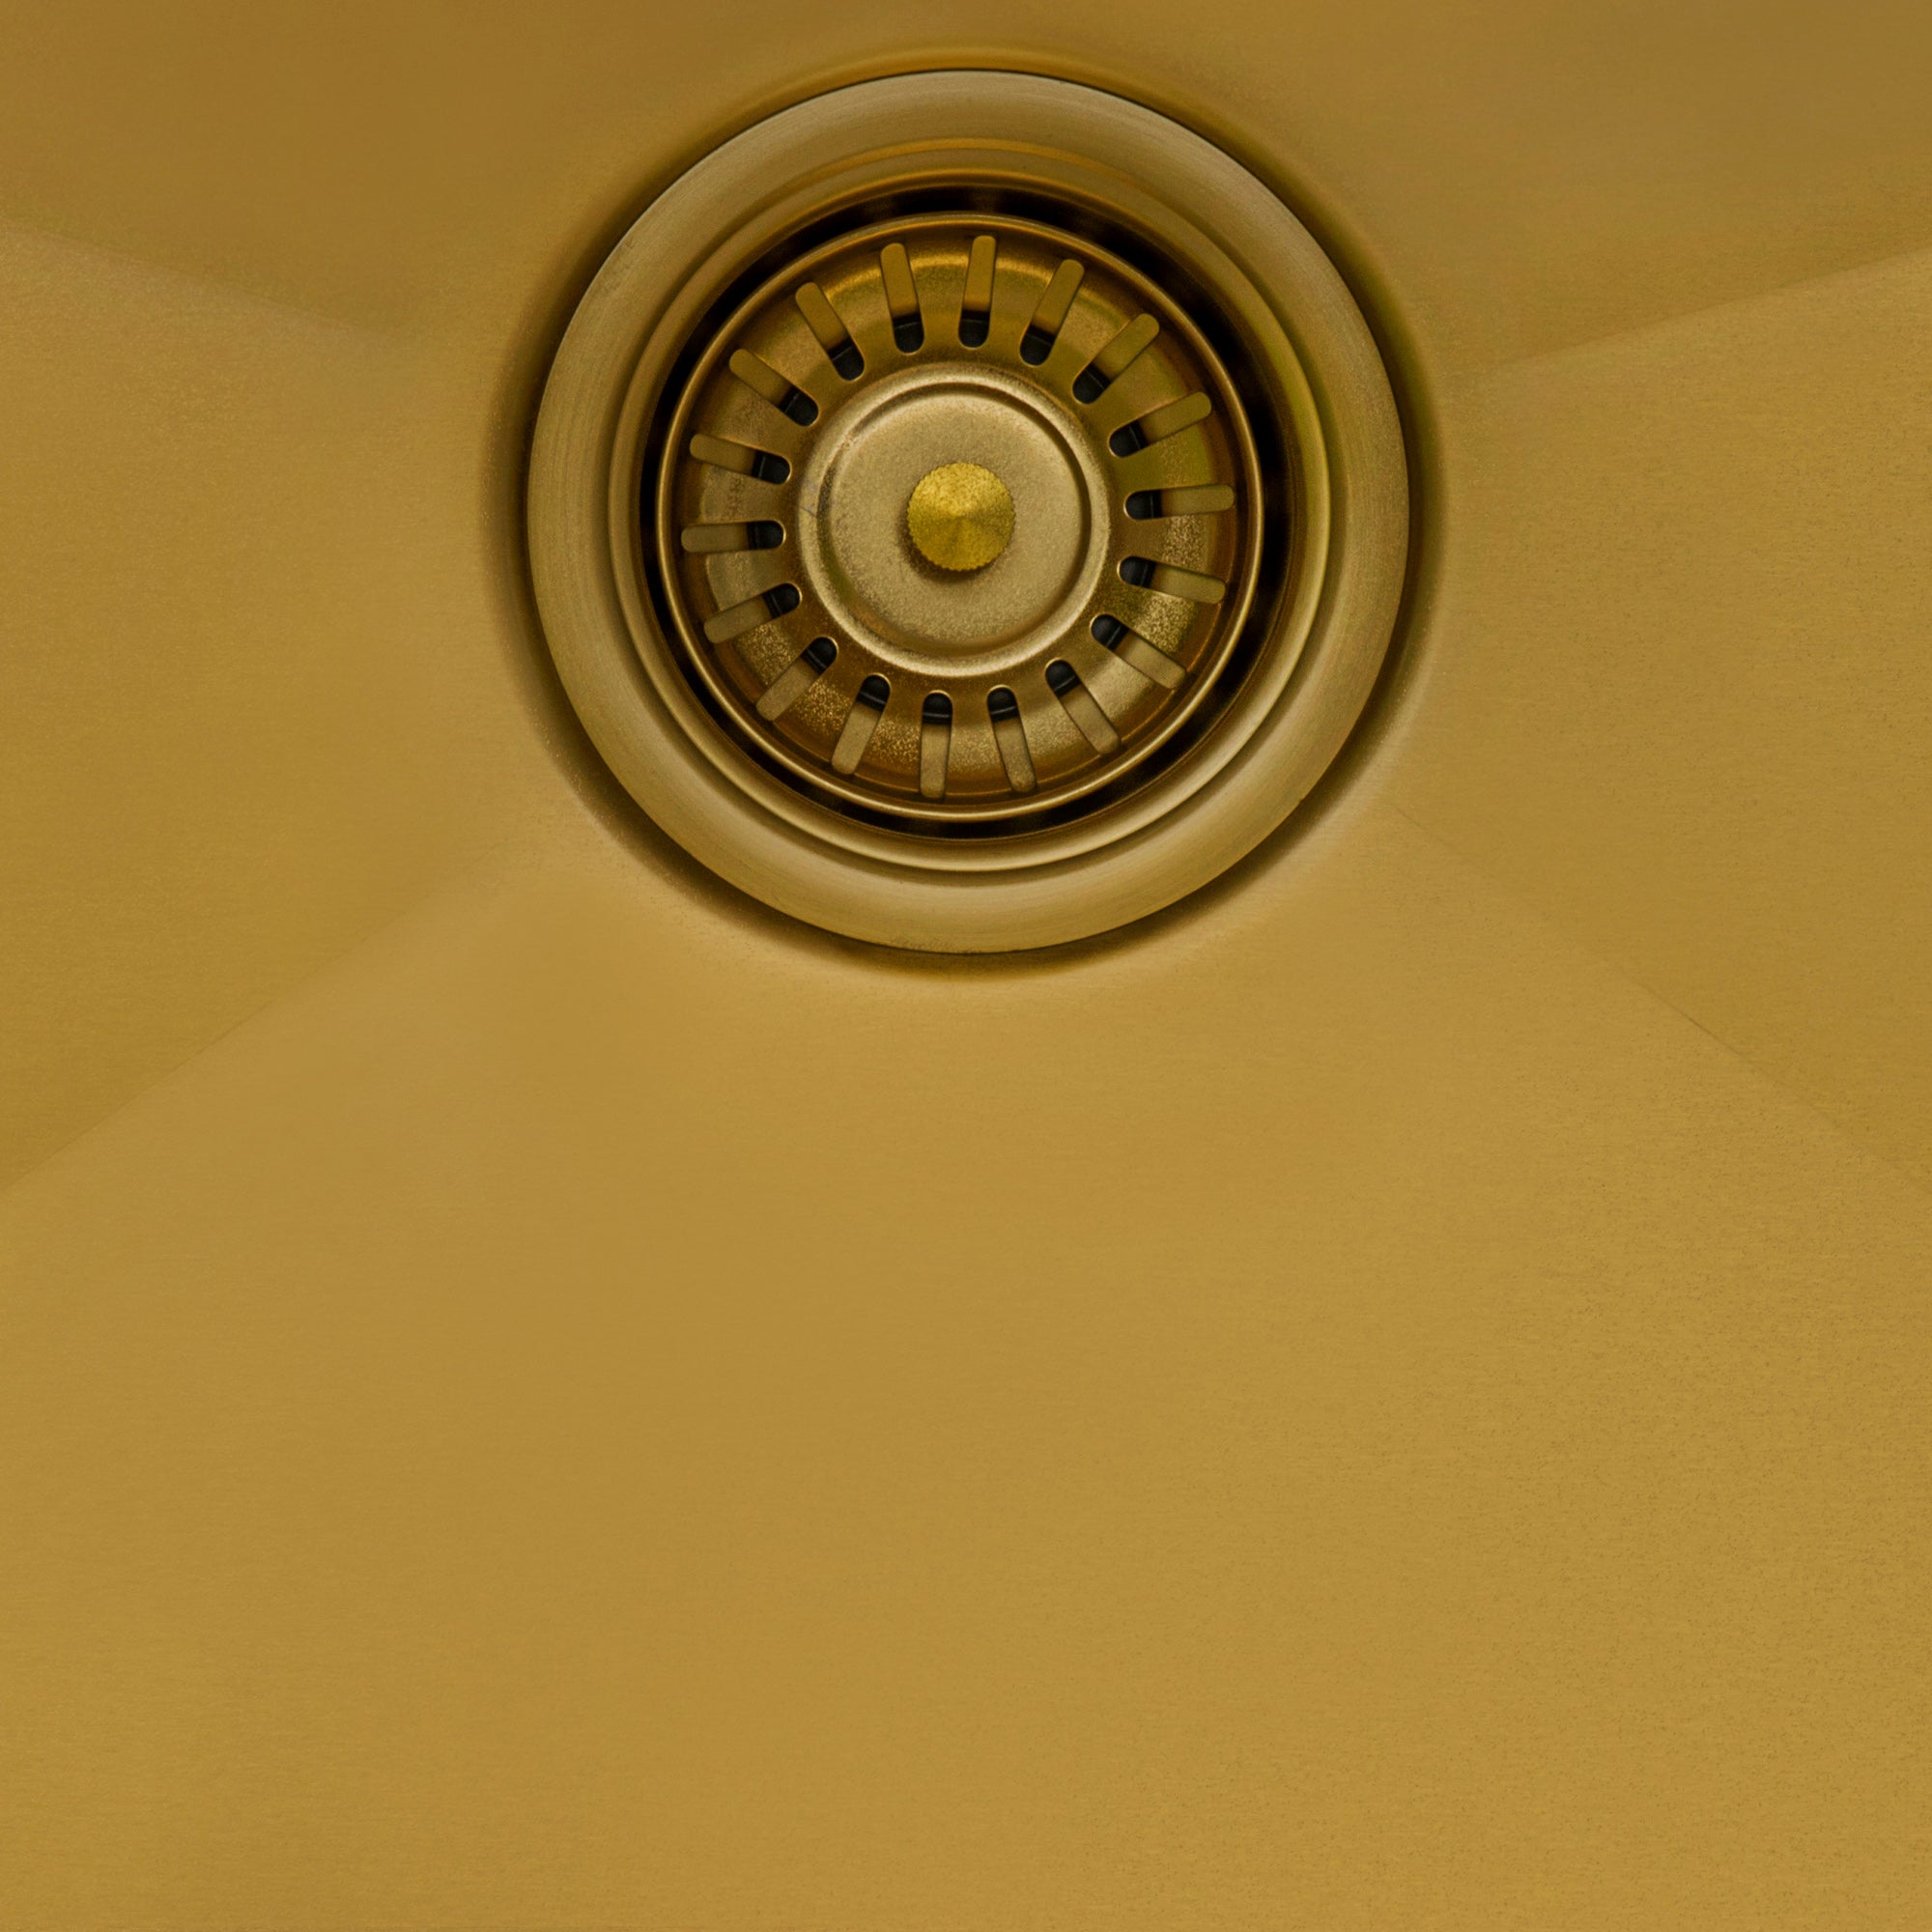 Ruvati 27" Matte Gold Stainless Steel Undermount Workstation Kitchen Sink